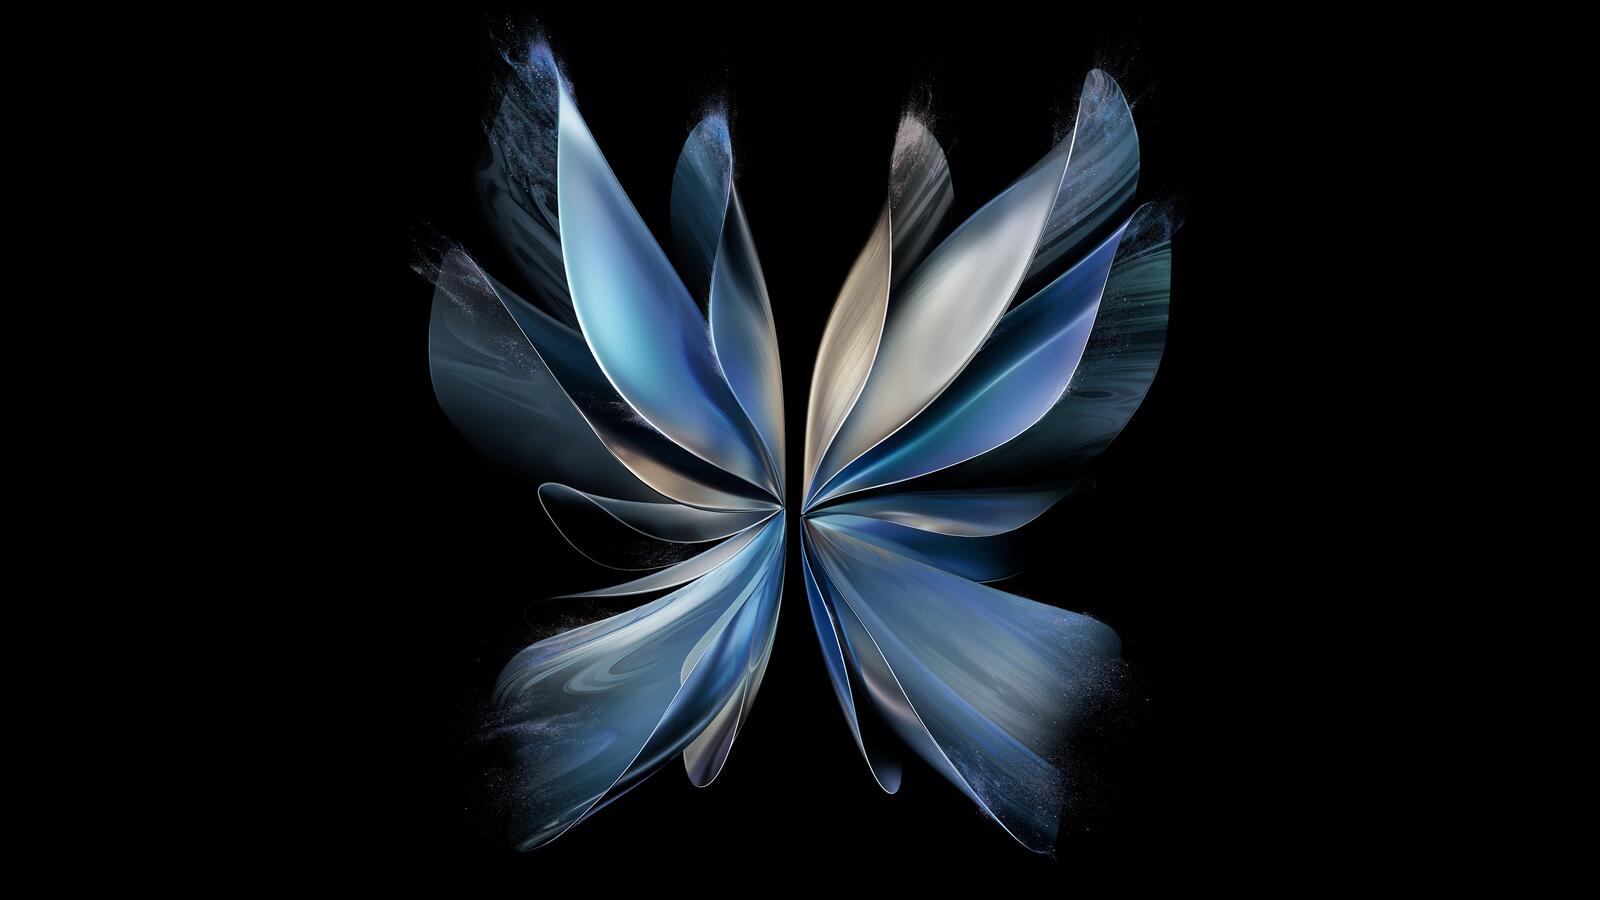 免费照片一个蝴蝶形状的亮蓝色物体。